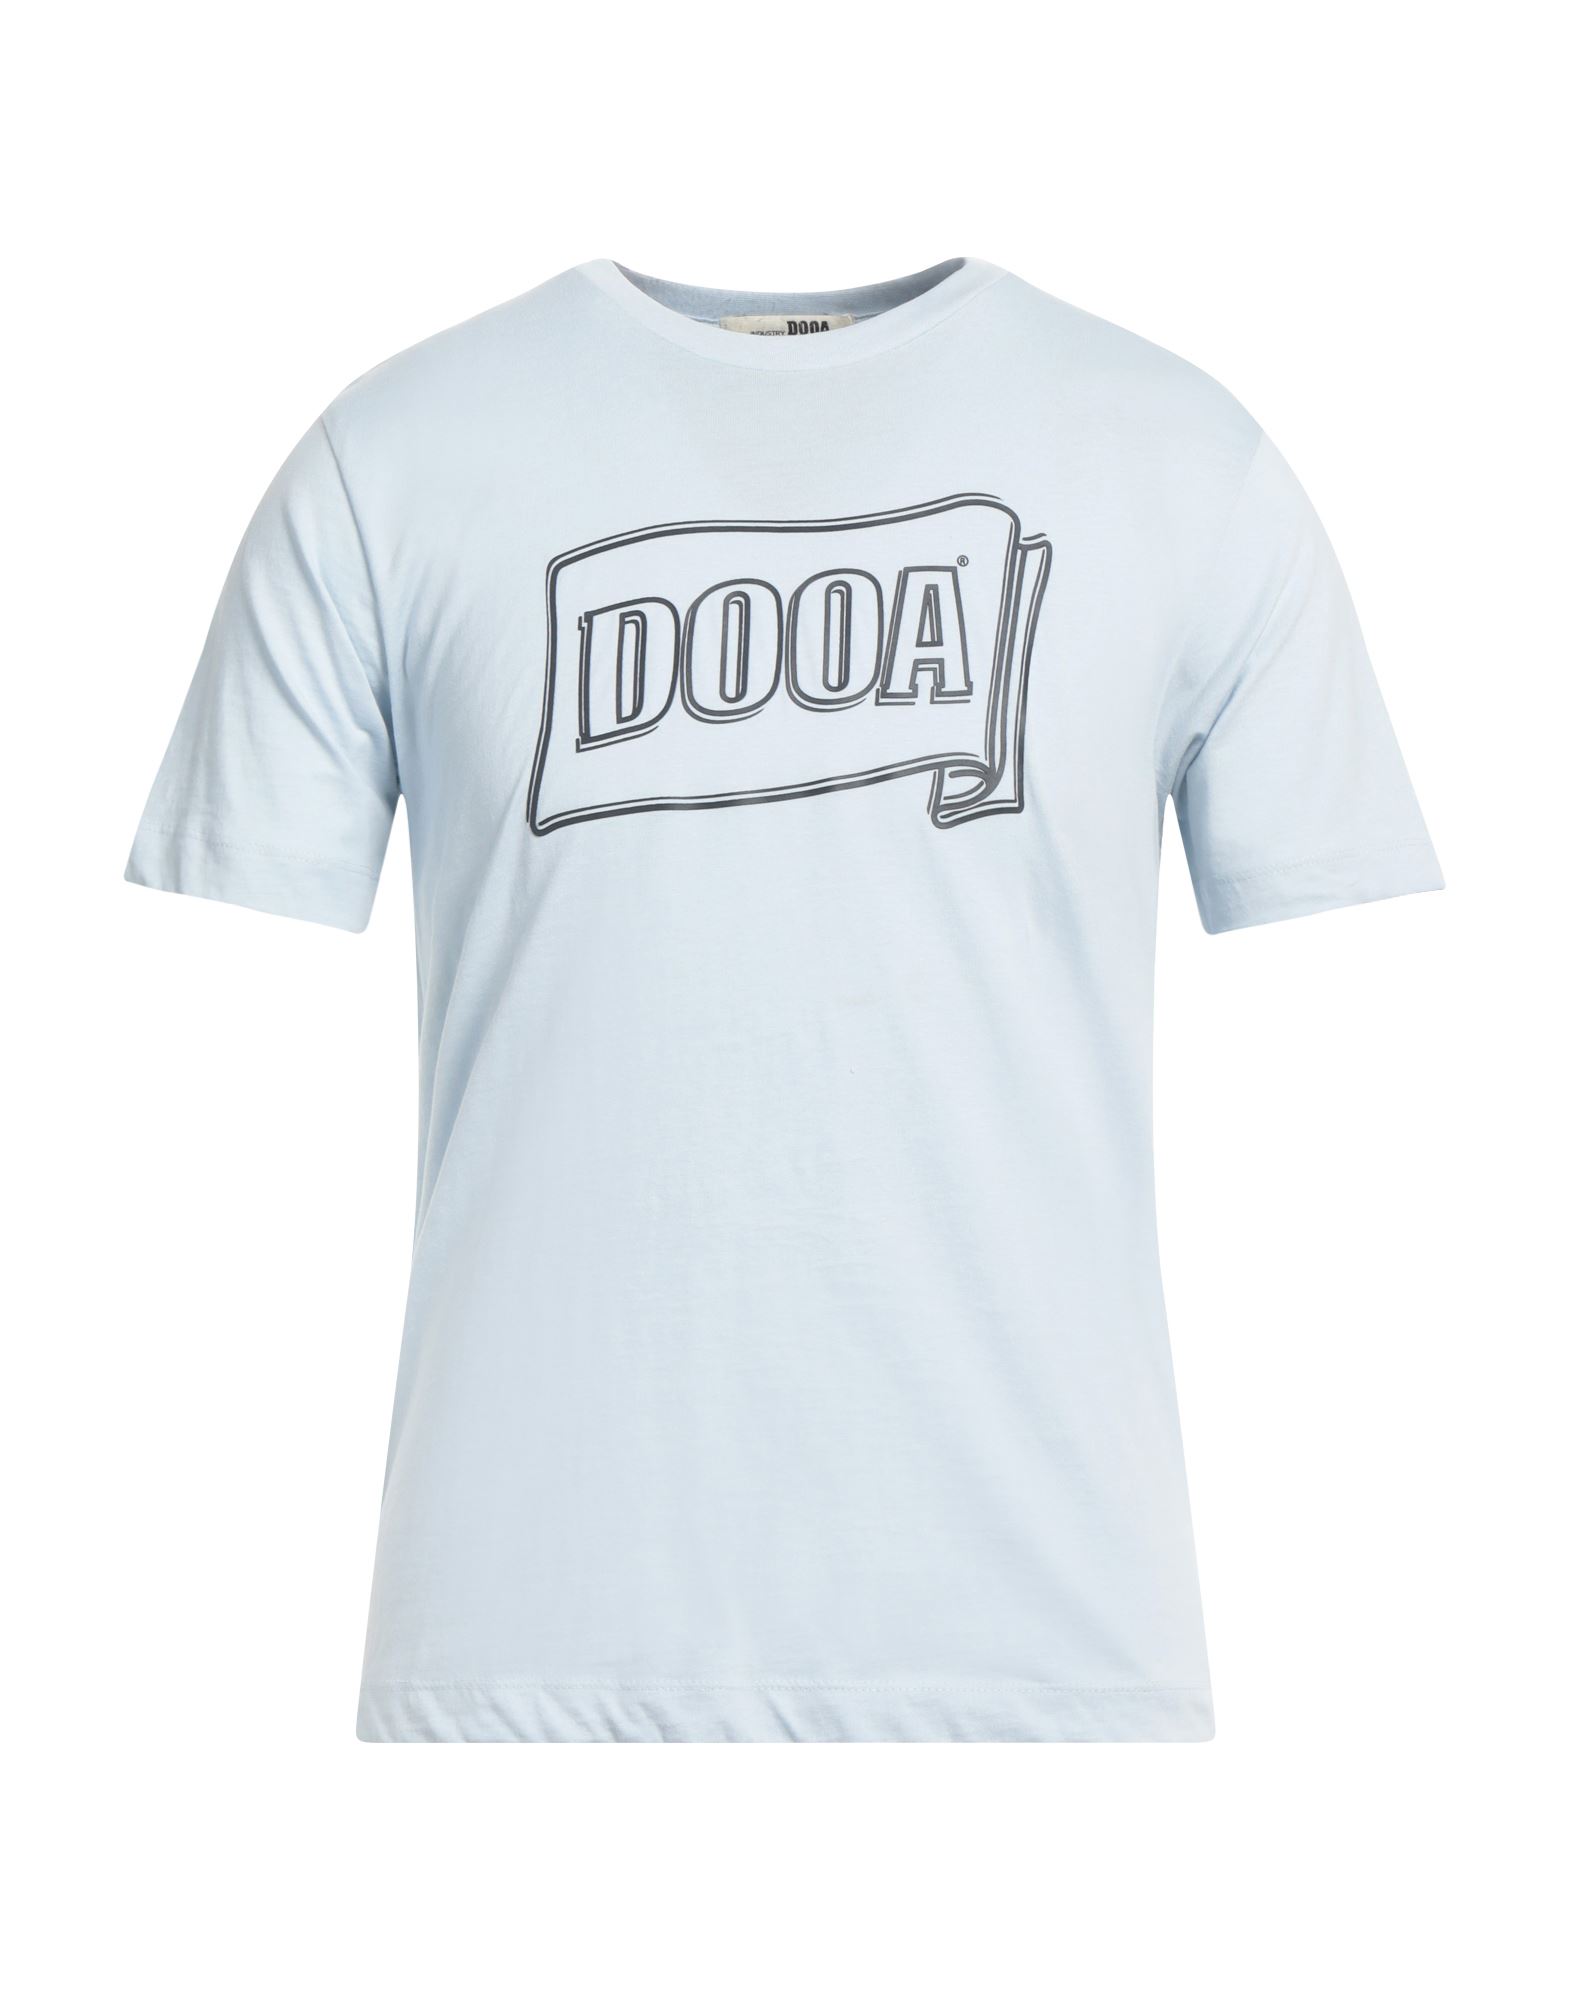 DOOA T-shirts Herren Himmelblau von DOOA